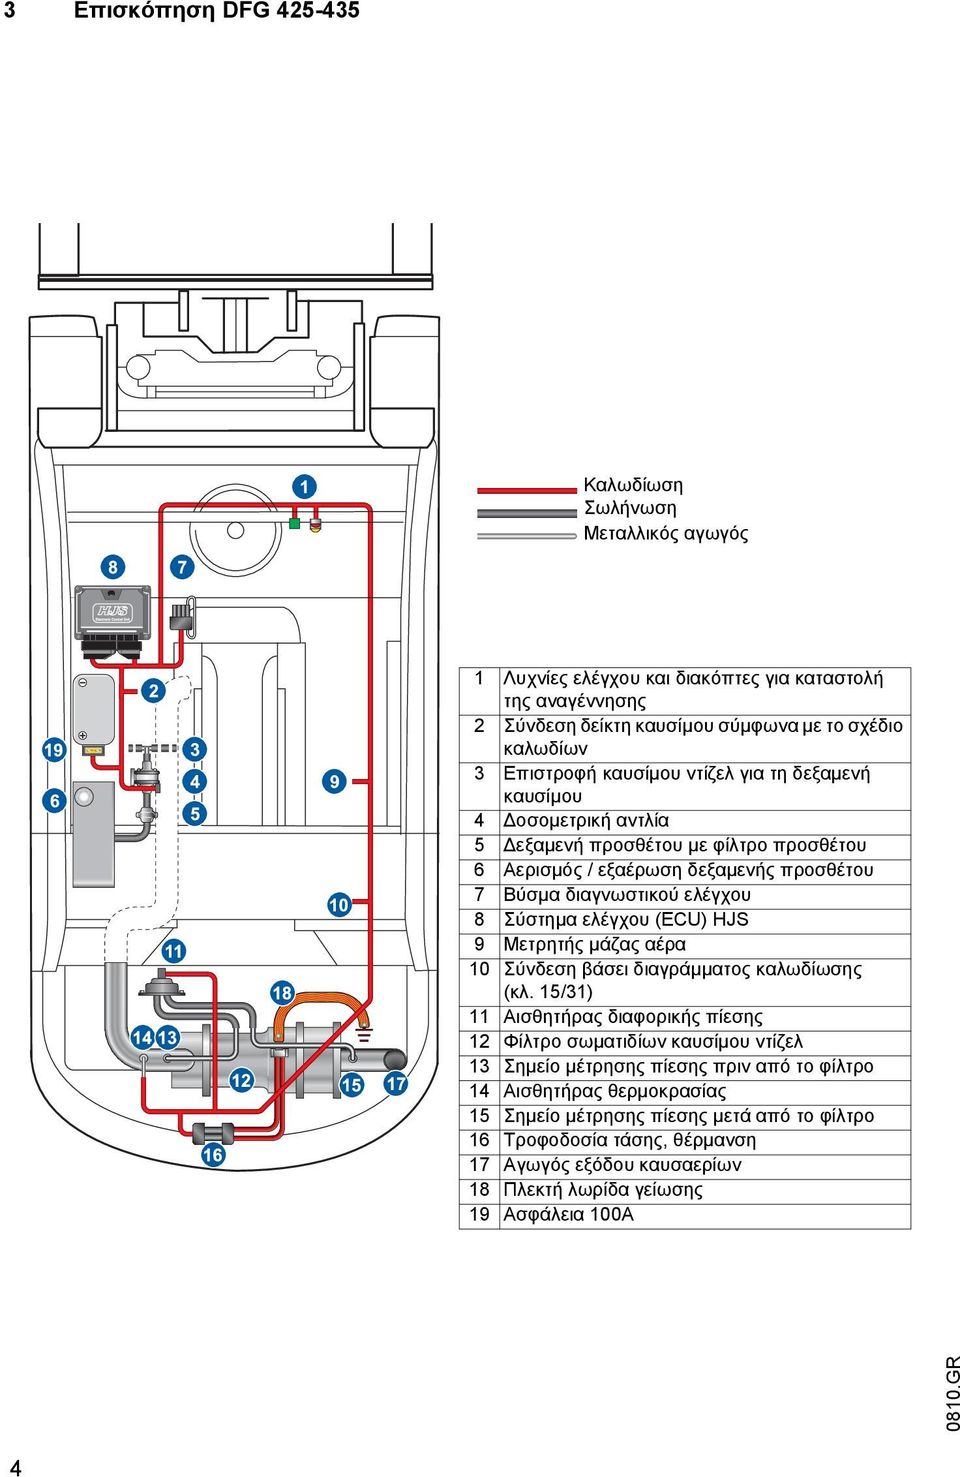 Σύστημα ελέγχου (ECU) HJS 9 Μετρητής μάζας αέρα 10 Σύνδεση βάσει διαγράμματος καλωδίωσης (κλ.